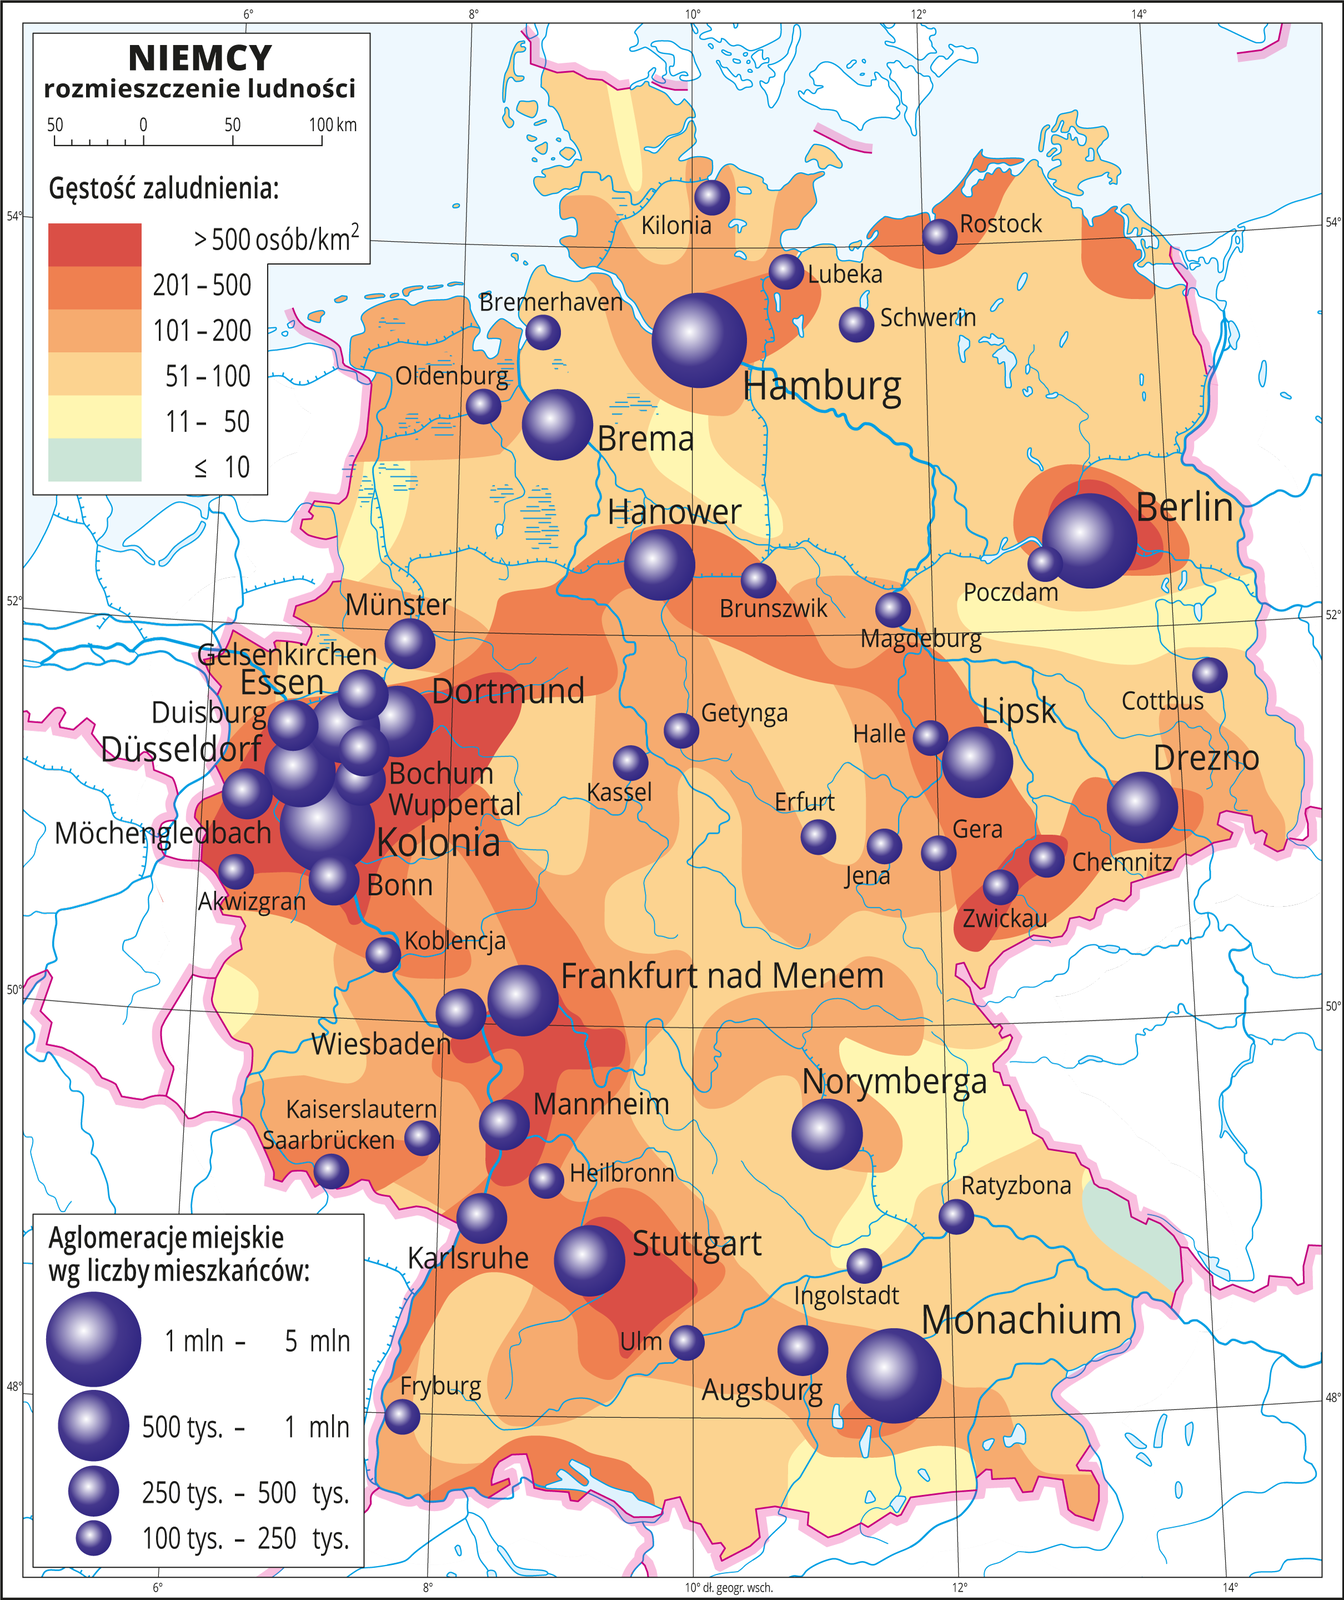 Ilustracja przedstawia mapę Niemiec. Na mapie przedstawiono rozmieszczenie ludności. Kolorami od zielonego (jedna niewielka plama) przez żółty i pomarańczowy do czerwonego przedstawiono gęstość zaludnienia. Plamy rozkładają się nieregularnie, wokół miast kolor pomarańczowy i czerwony oznaczający dużą gęstość zaludnienia, nawet powyżej pięciuset osób na kilometr kwadratowy. Najgęściej zaludnione obszary na zachodzie Niemiec. Na mapie różnej wielkości sygnatury (koła) obrazujące aglomeracje miejskie wg liczby mieszkańców: Hamburg, Berlin, Monachium, Kolonia – od jednego miliona do pięciu milionów mieszkańców. Hanover, Drezno, Lipsk, Frankfurt nad Menem Stuttgart, Dortmund od pięciuset tysięcy mieszkańców do miliona. Kilkanaście mniejszych sygnatur poniżej dwustu pięćdziesięciu tysięcy mieszkańców. Mapa zawiera południki i równoleżniki, dookoła mapy w białej ramce opisano współrzędne geograficzne co dwa stopnie.